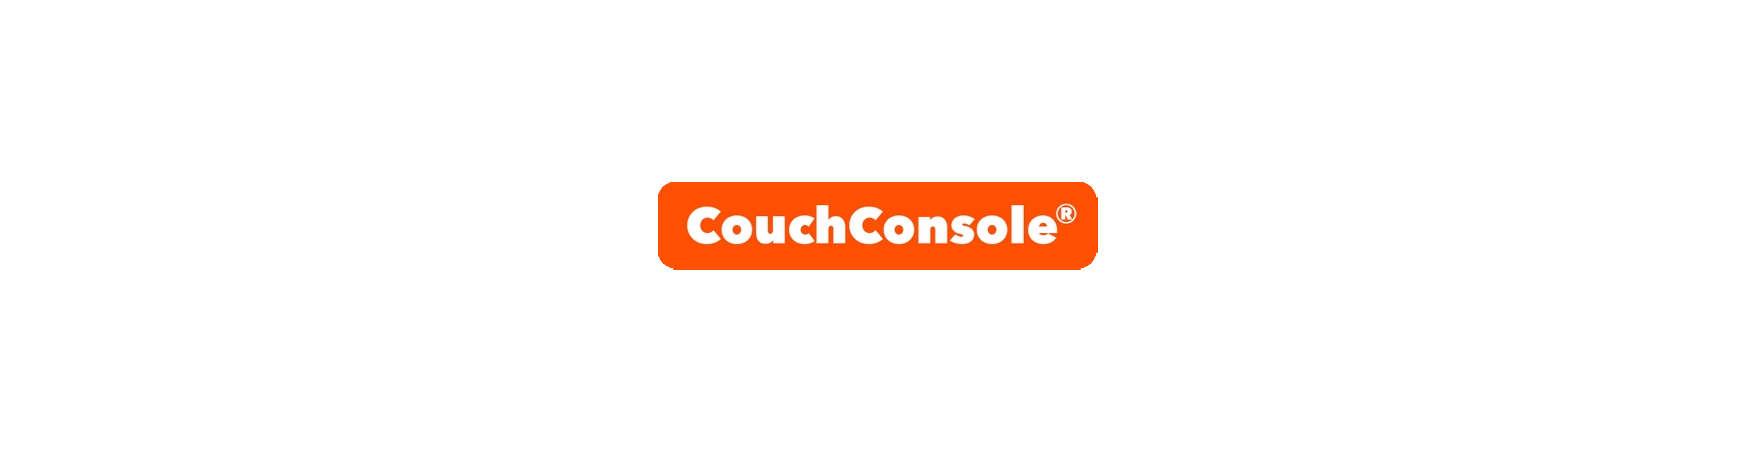 CouchConsole®